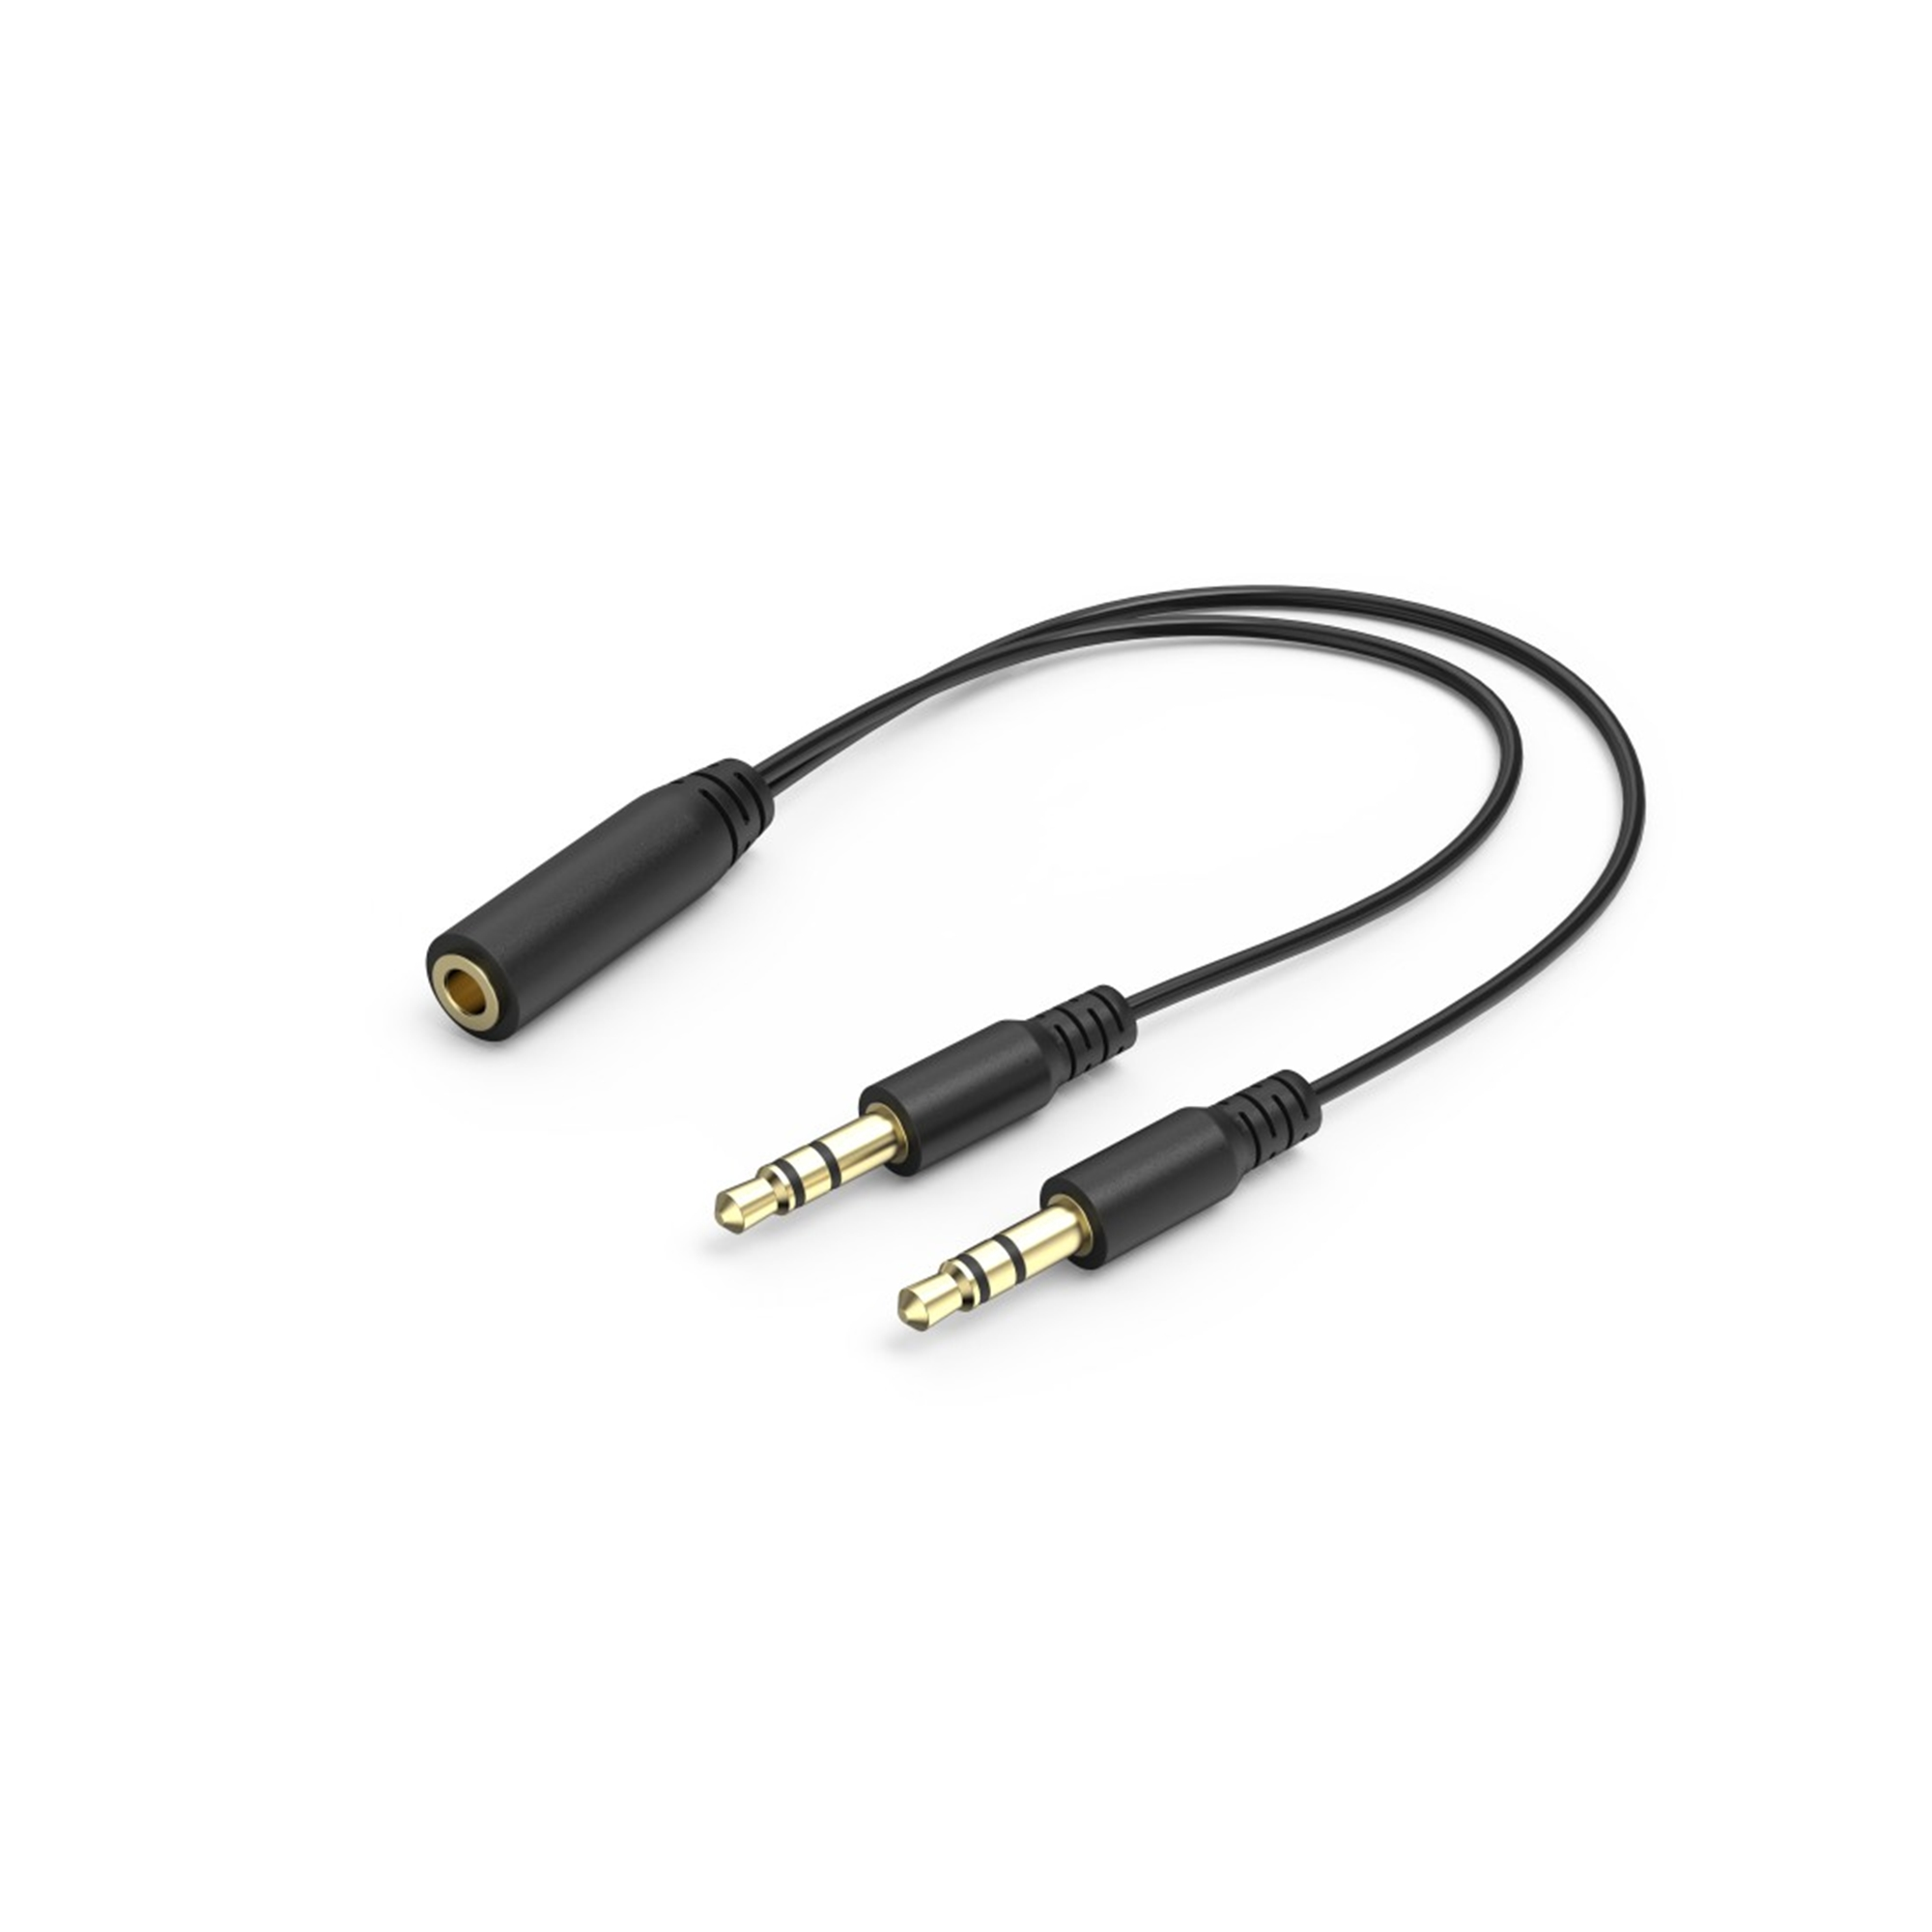 URAGE SoundZ 100 V2, Over-ear Weiß Gaming-Headset